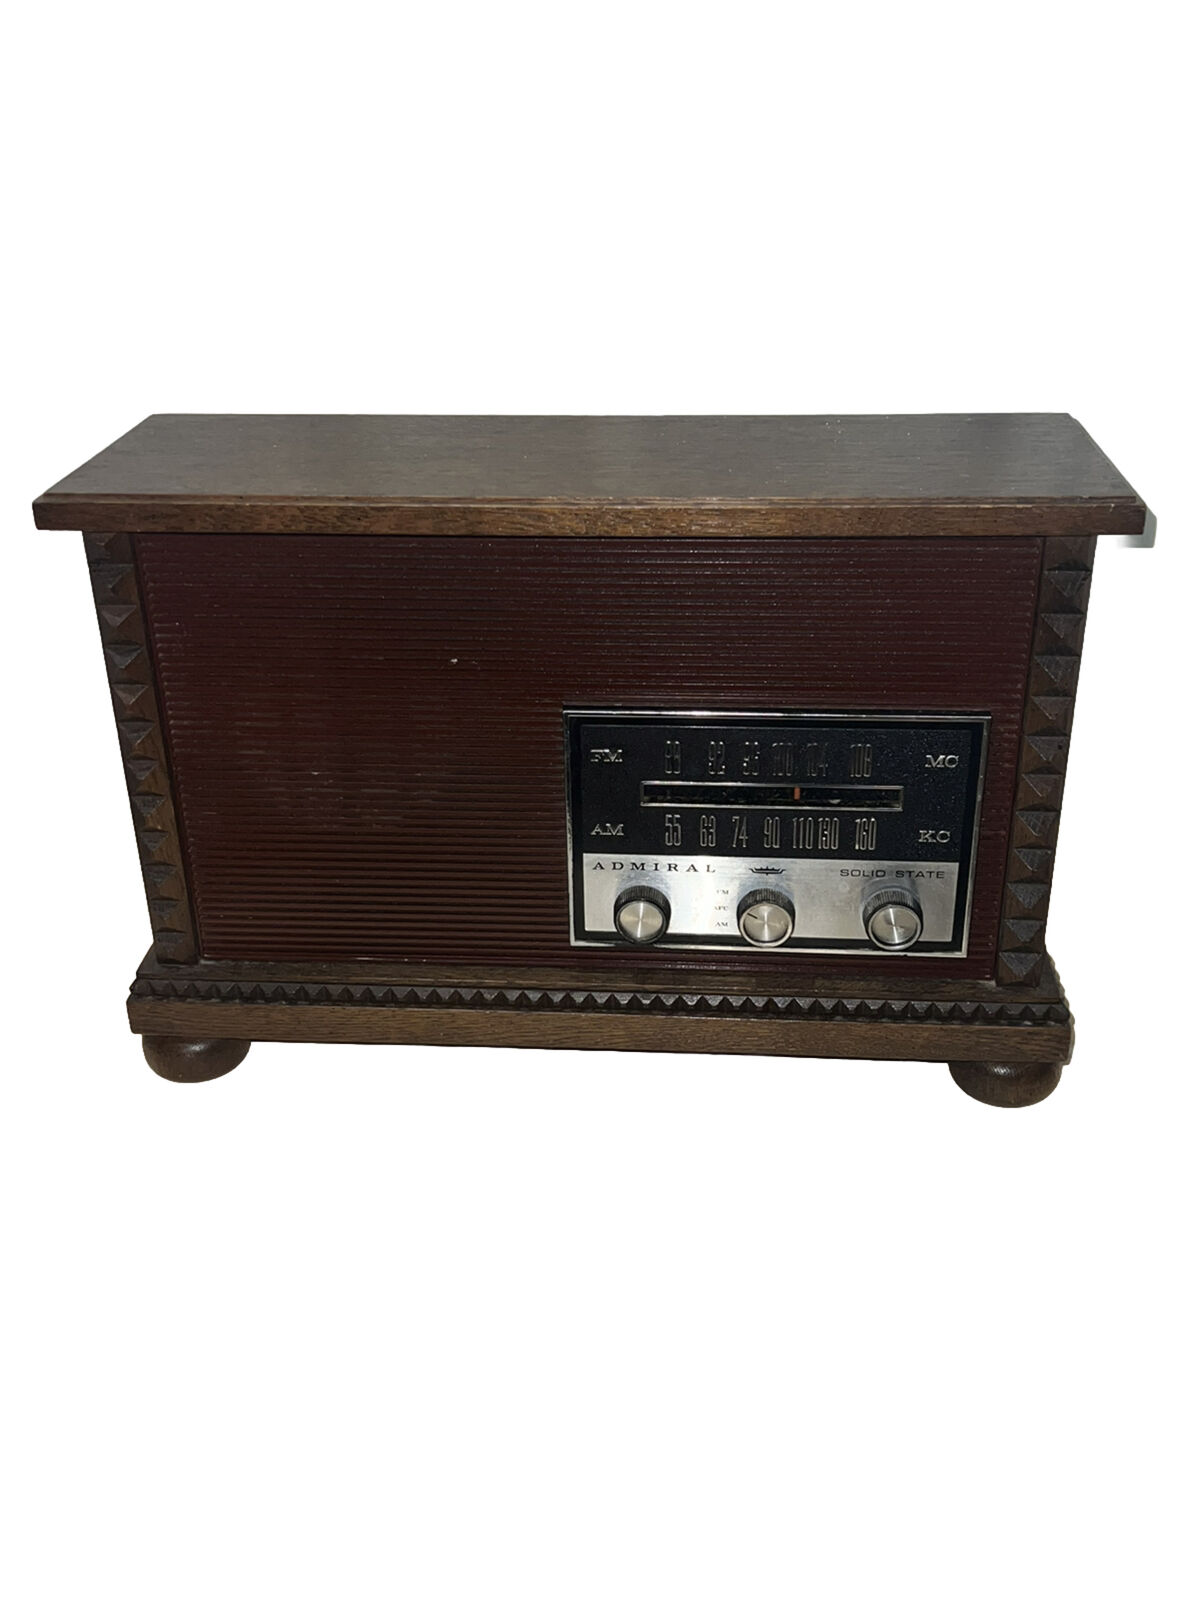 Vintage Admiral AM/FM Radio | Model RF-143